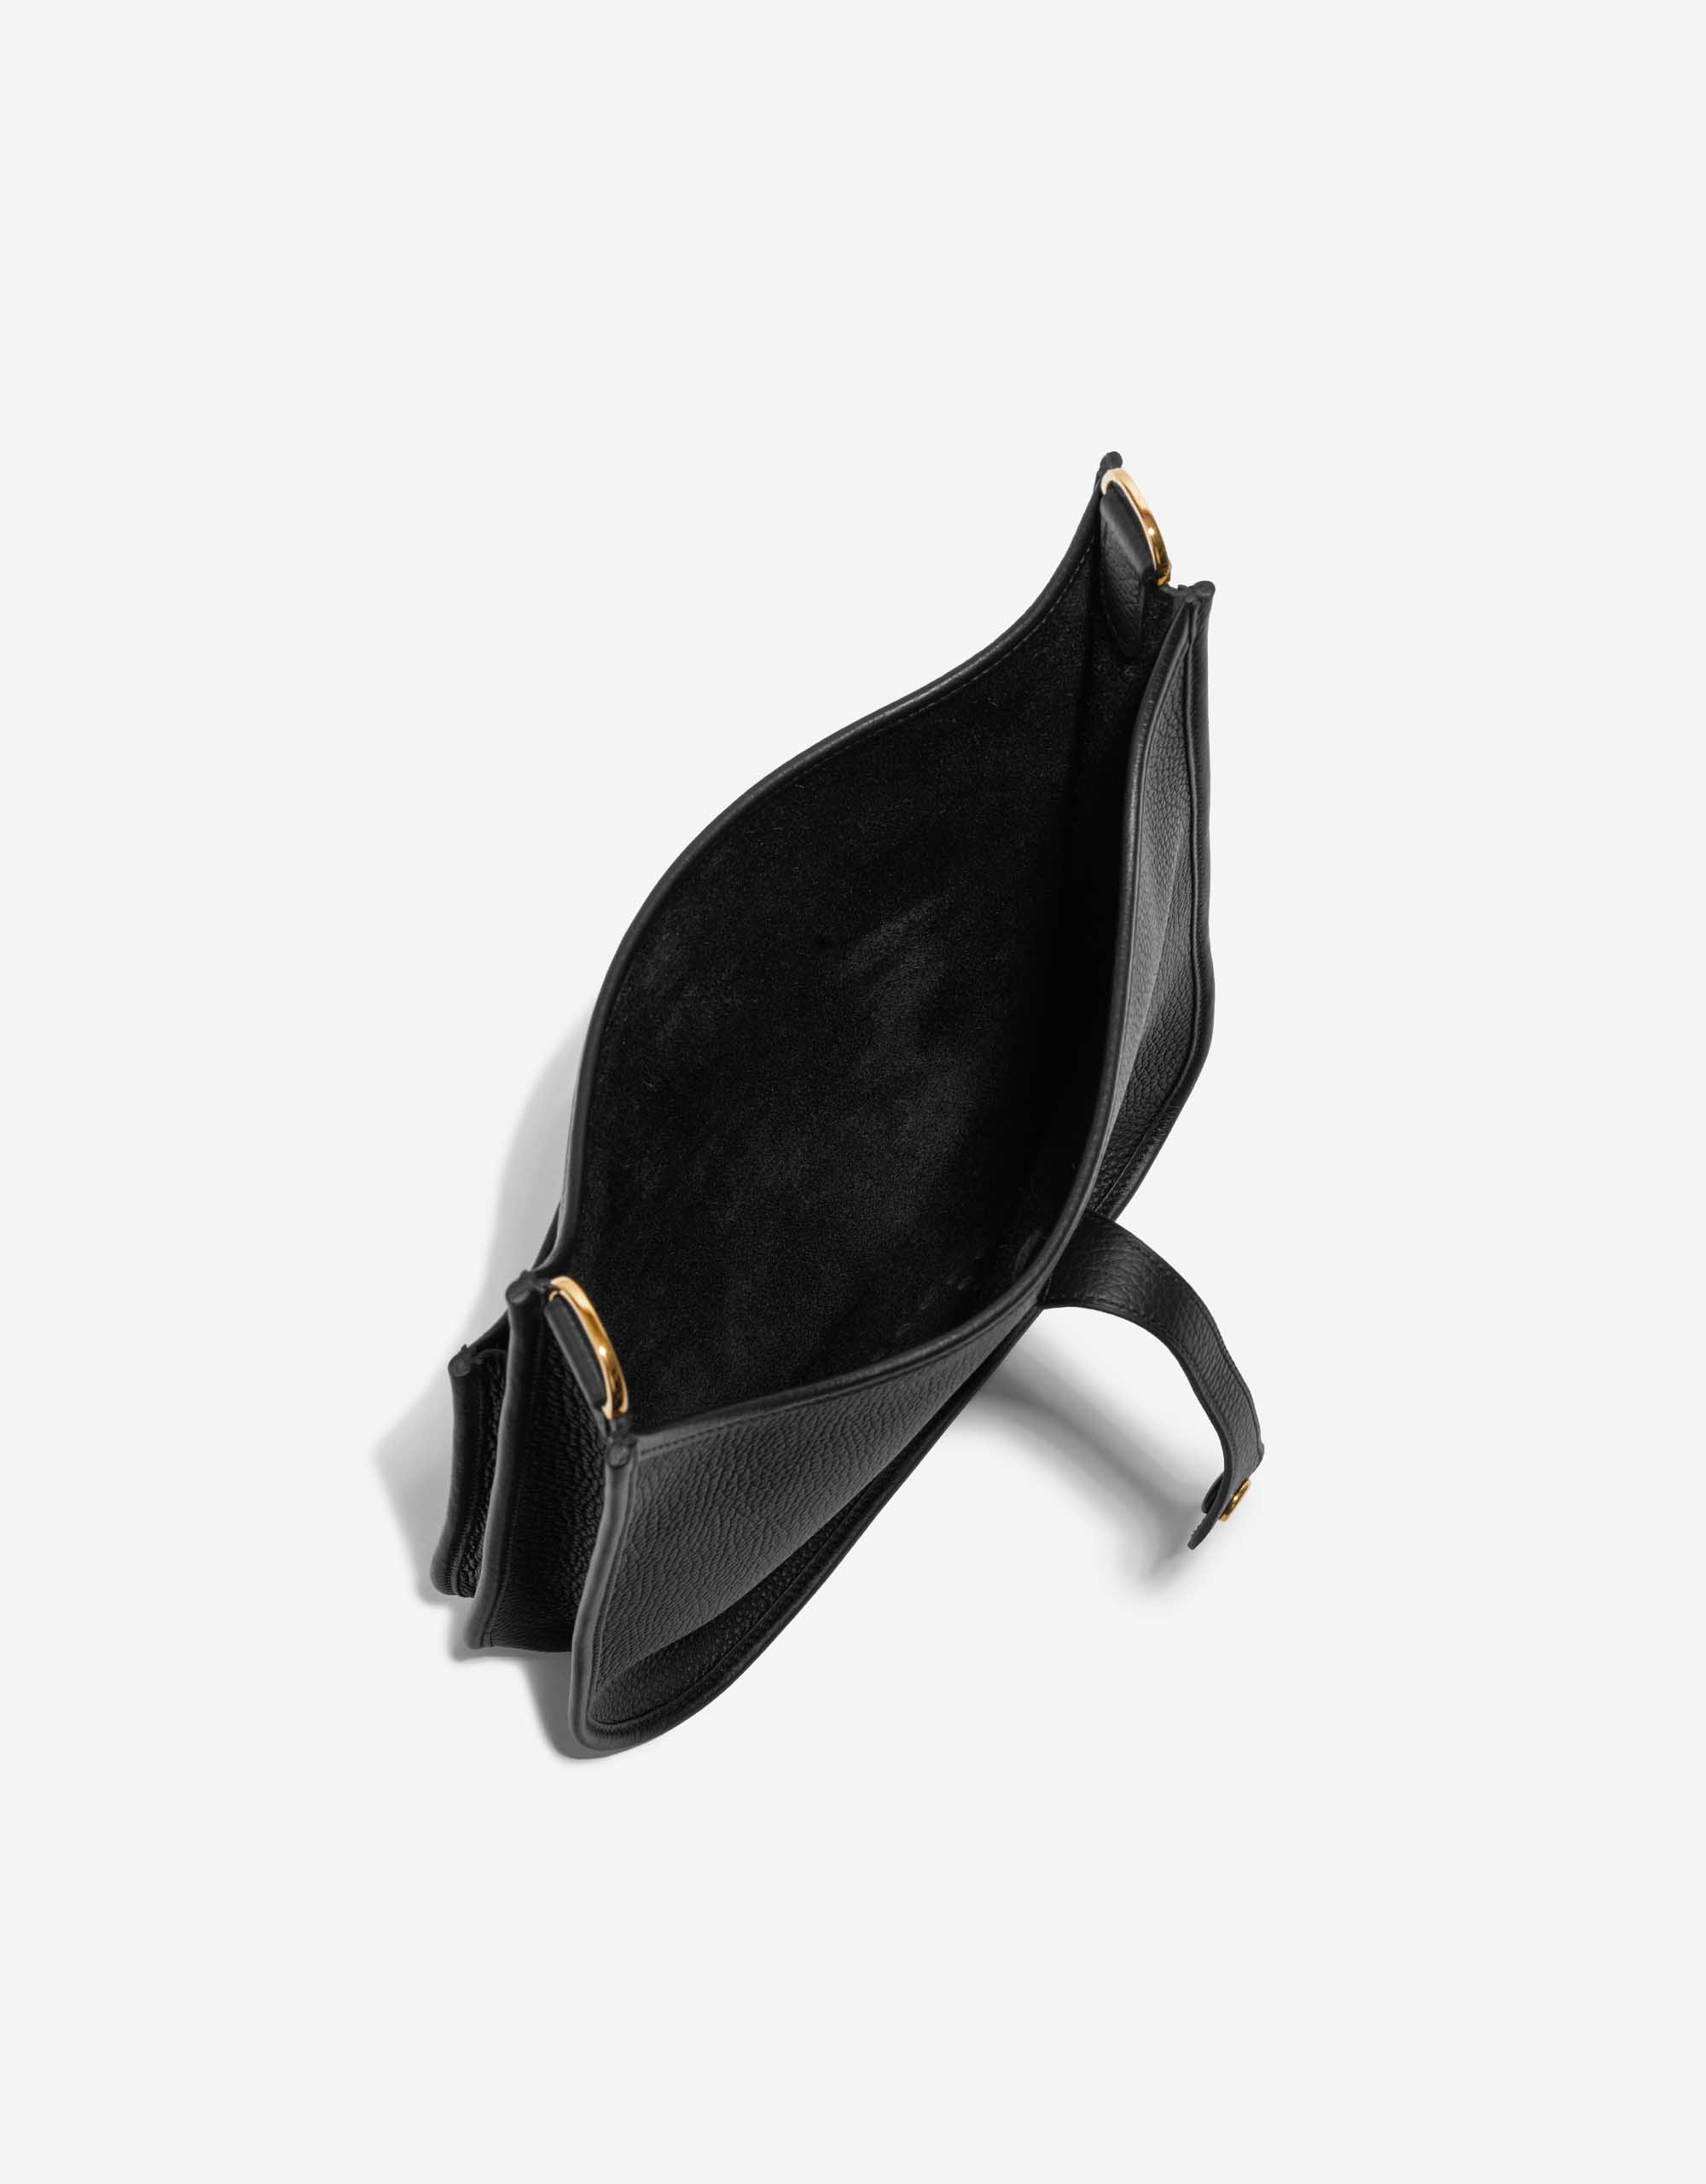 Pre-owned Hermès bag Evelyne 29 Taurillon Clemence Black Black Inside | Sell your designer bag on Saclab.com